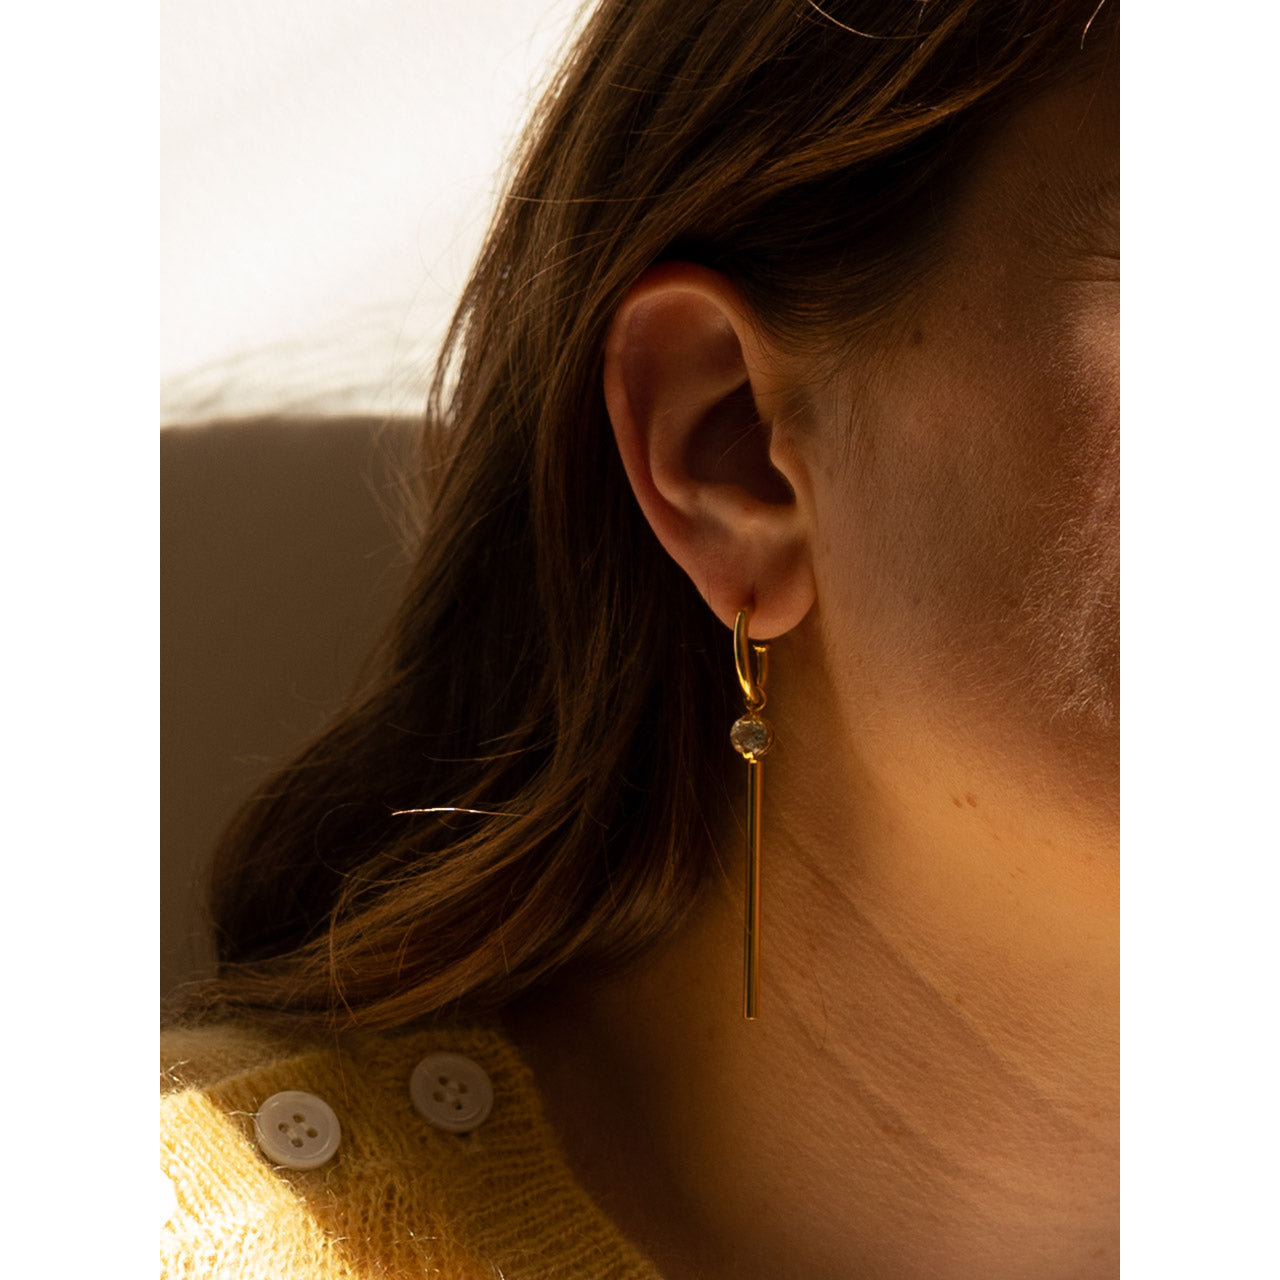 Two of A Kind earrings - Saskia